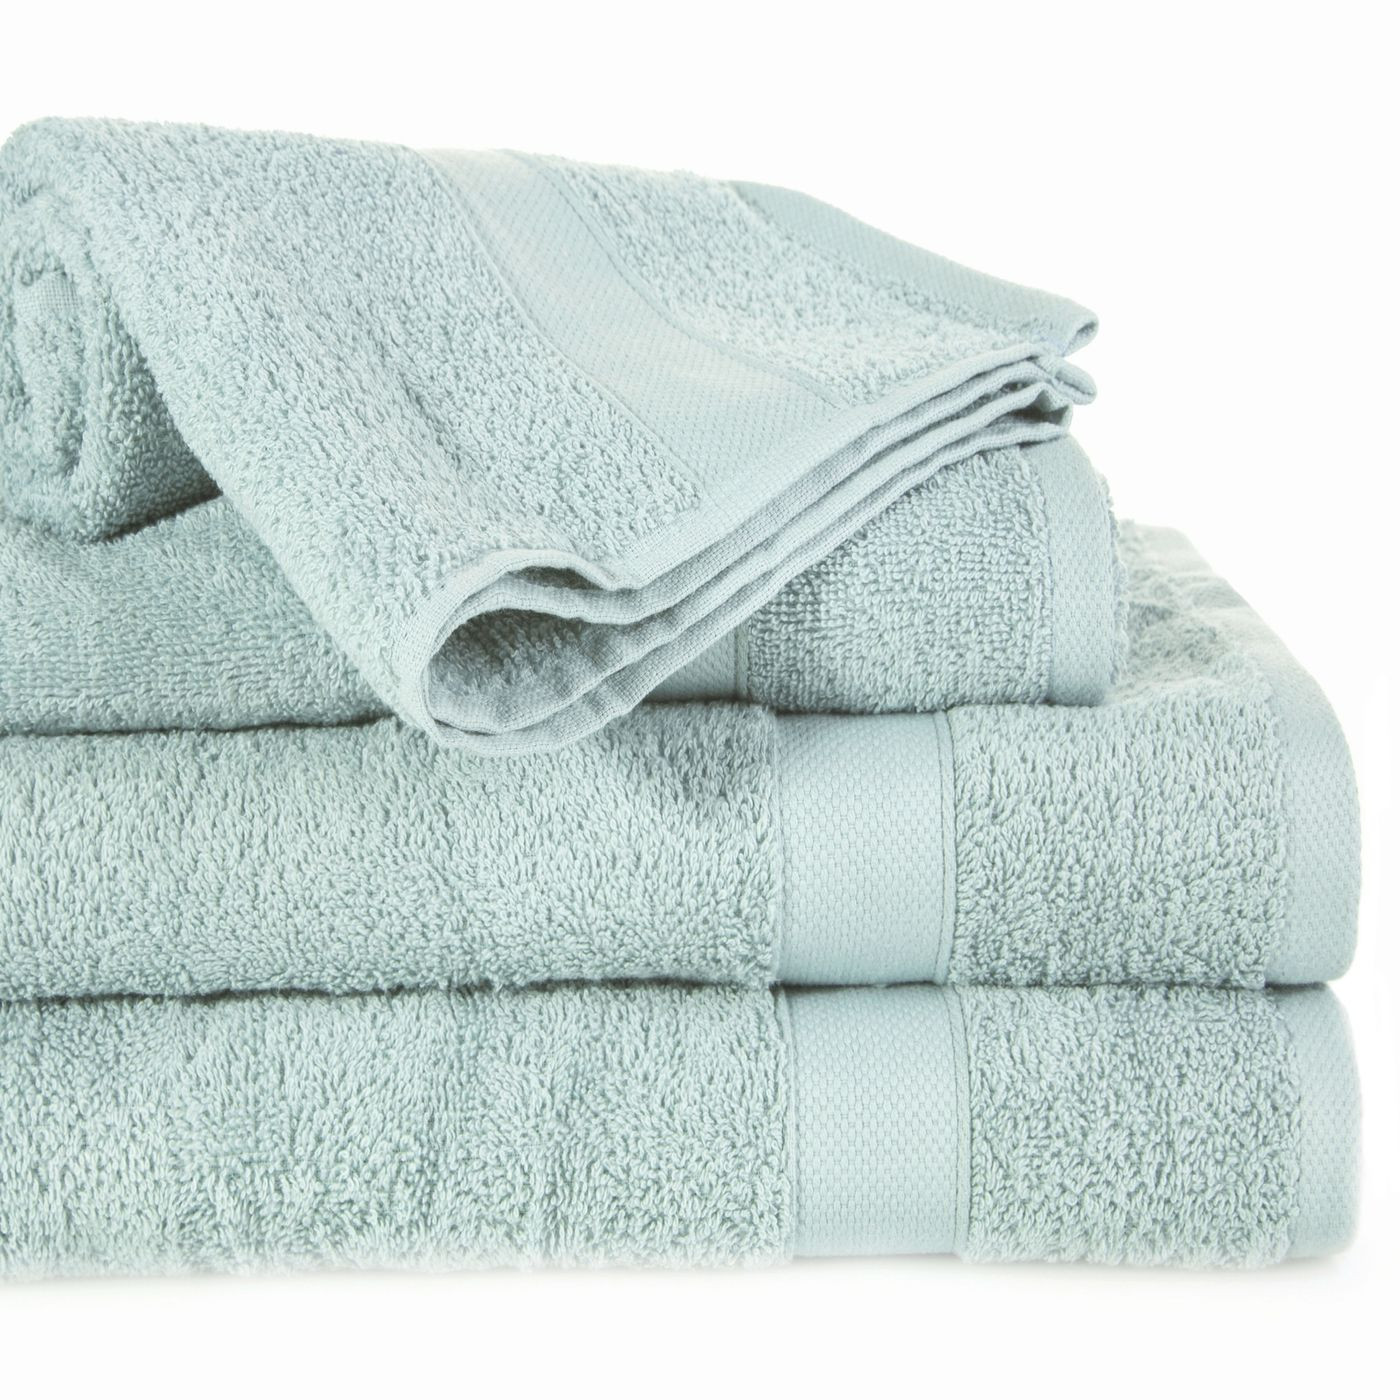 Miękki chłonny ręcznik kąpielowy miętowy 50x90